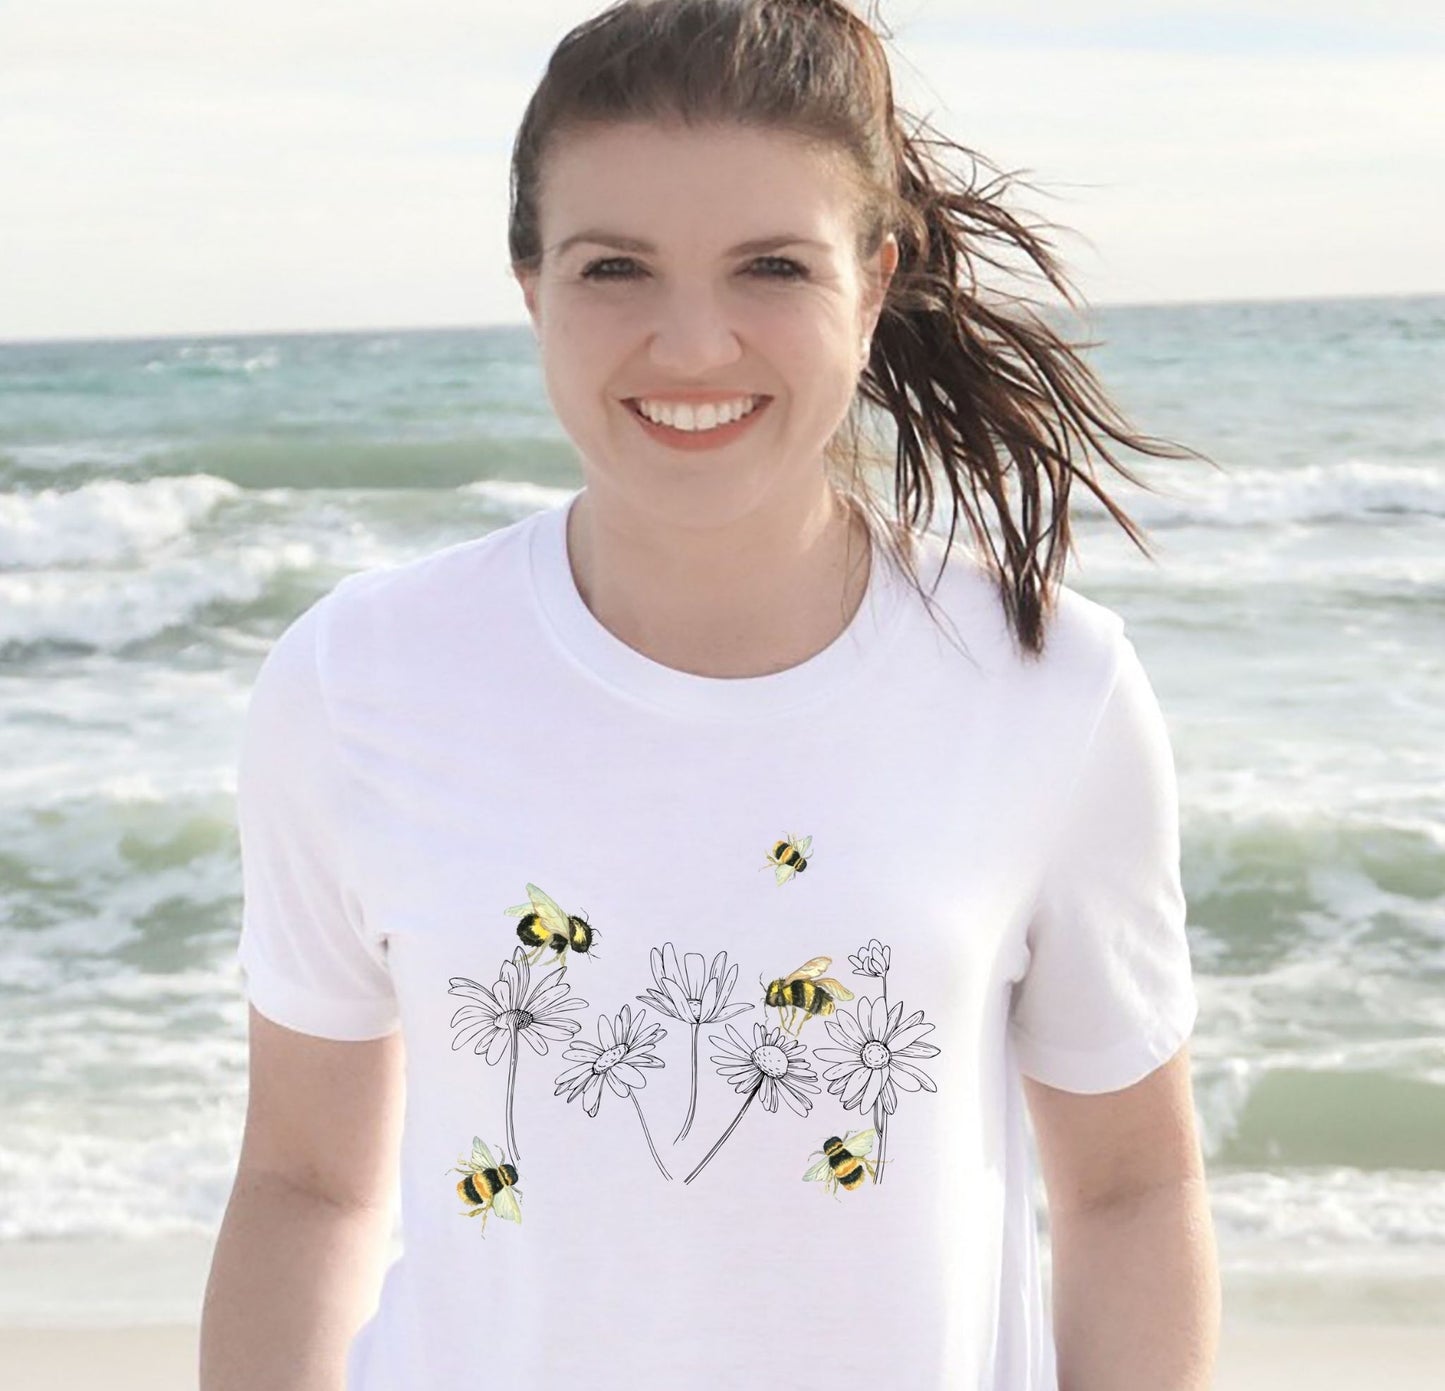 Buzzing Bee Watercolor Shirt